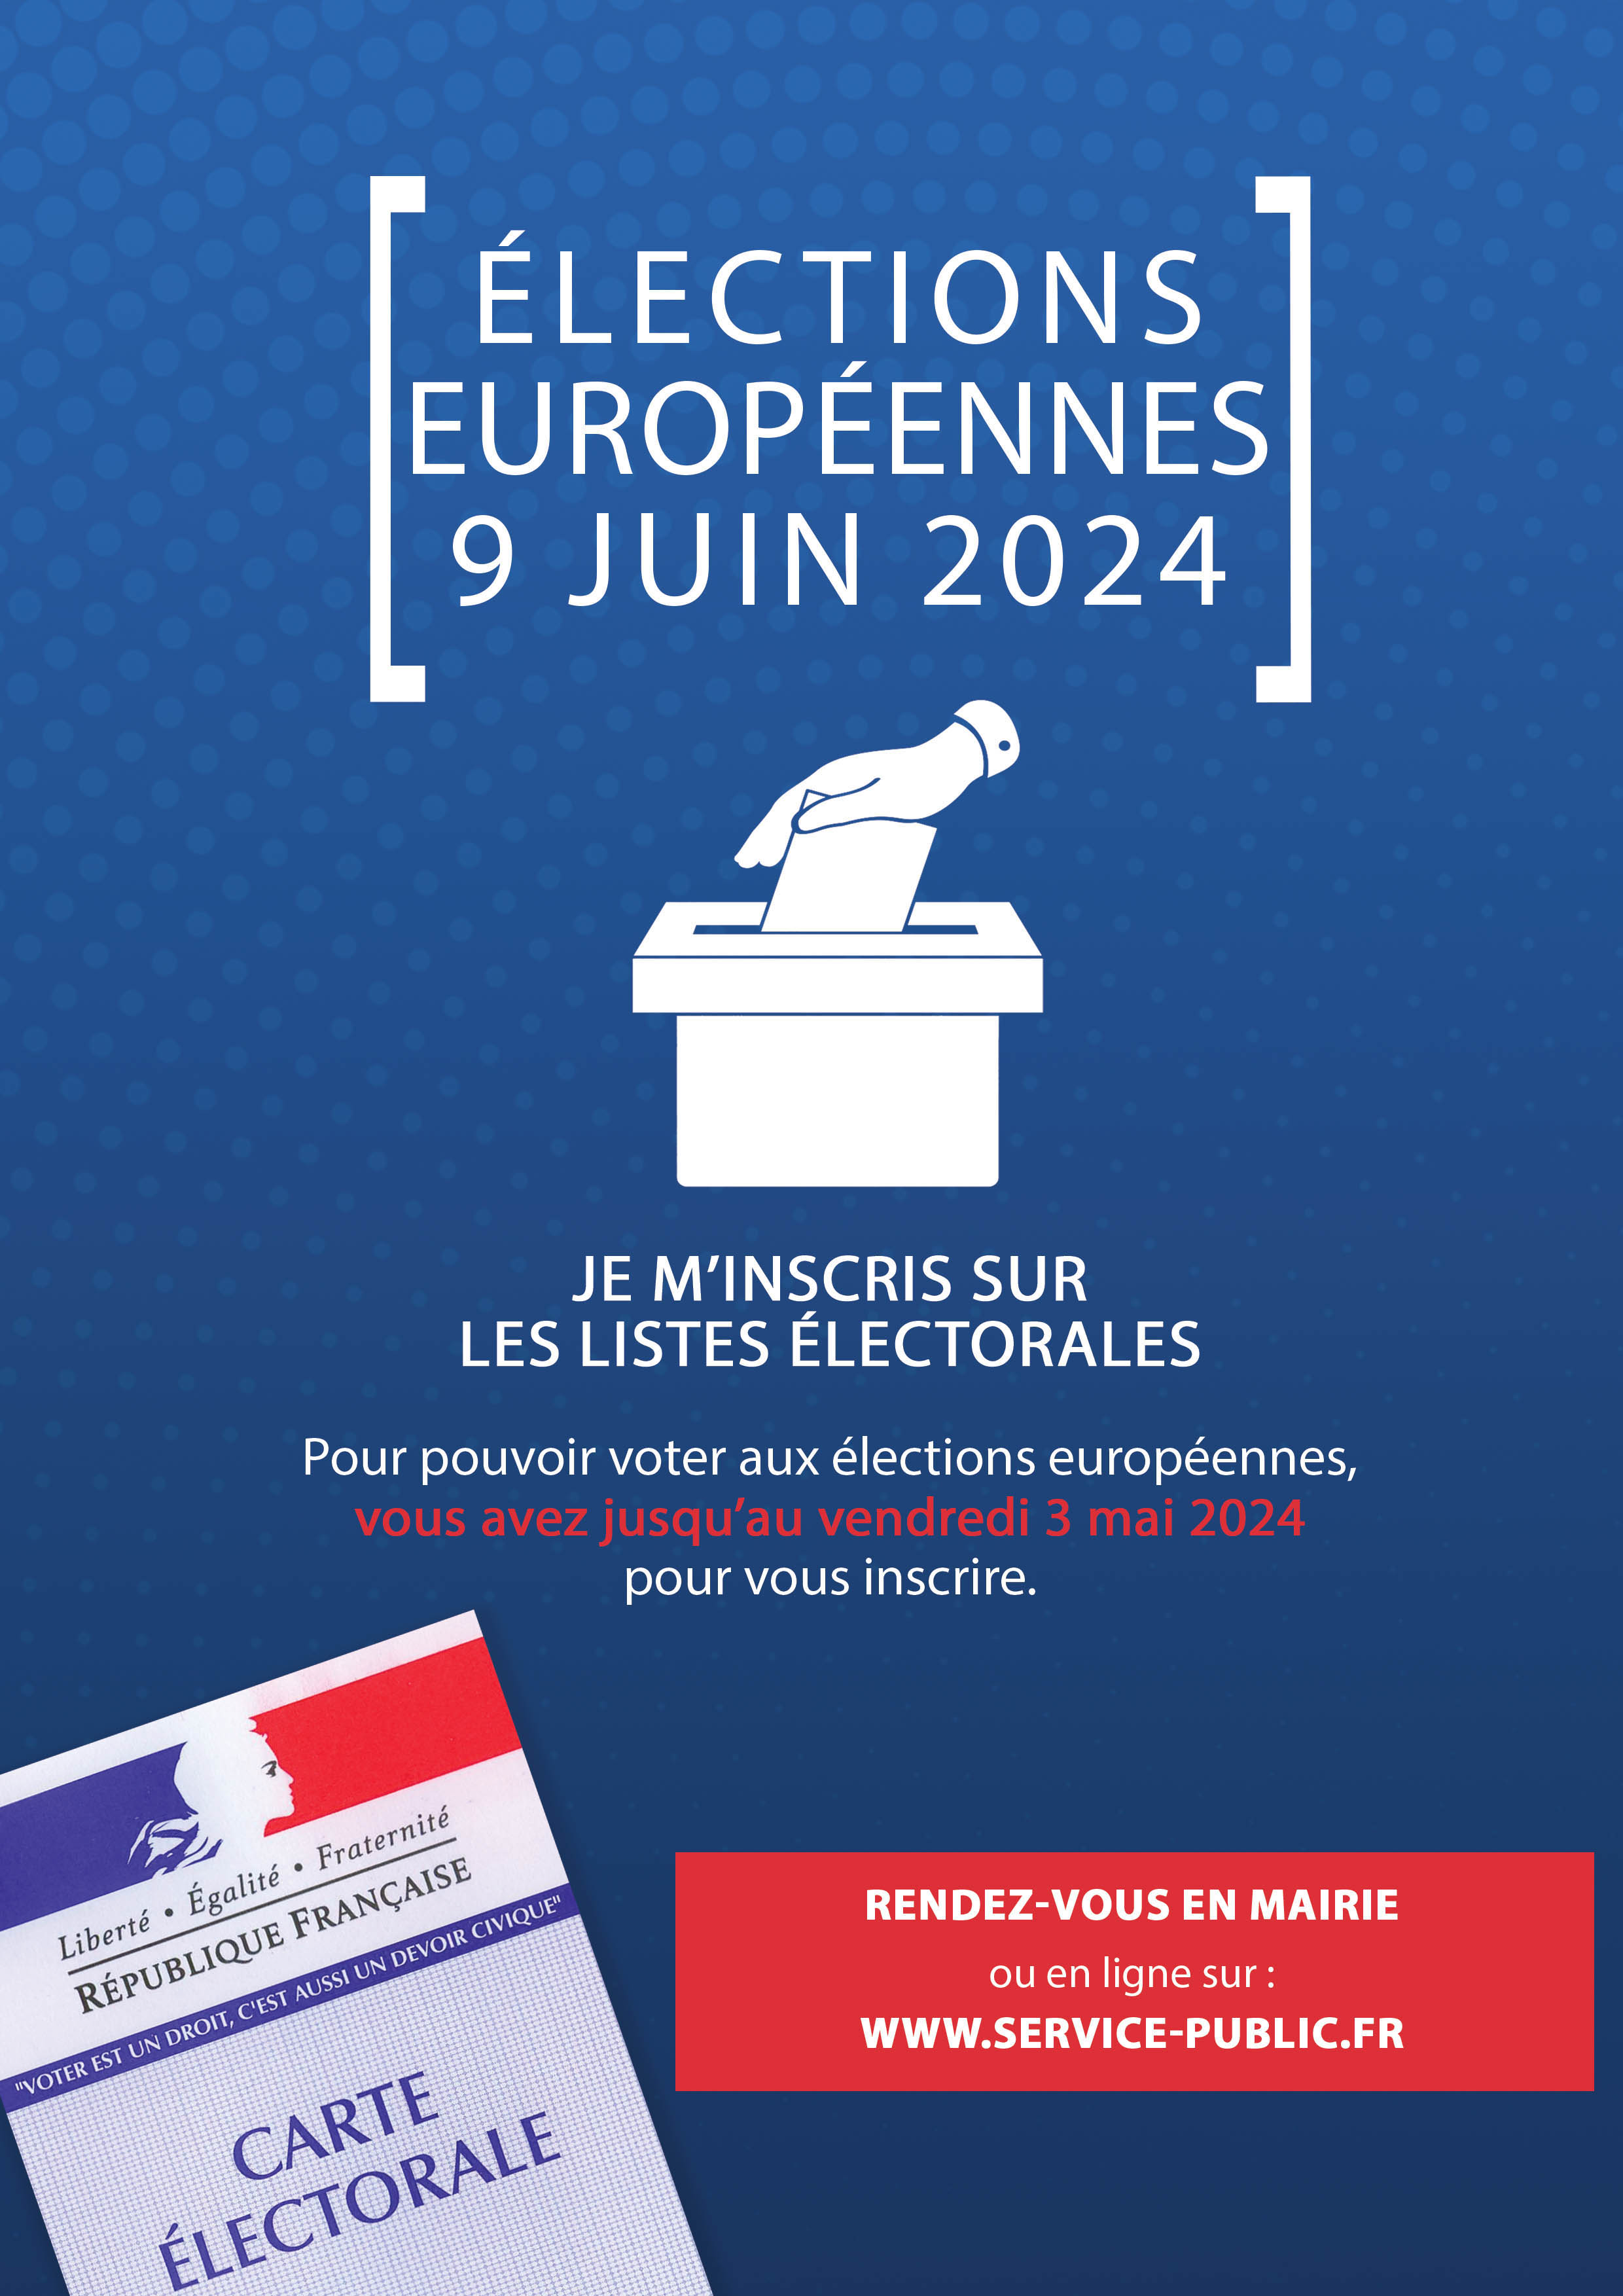 Inscription-listes-électorales-élections-européennes-9-juin-2024.jpg